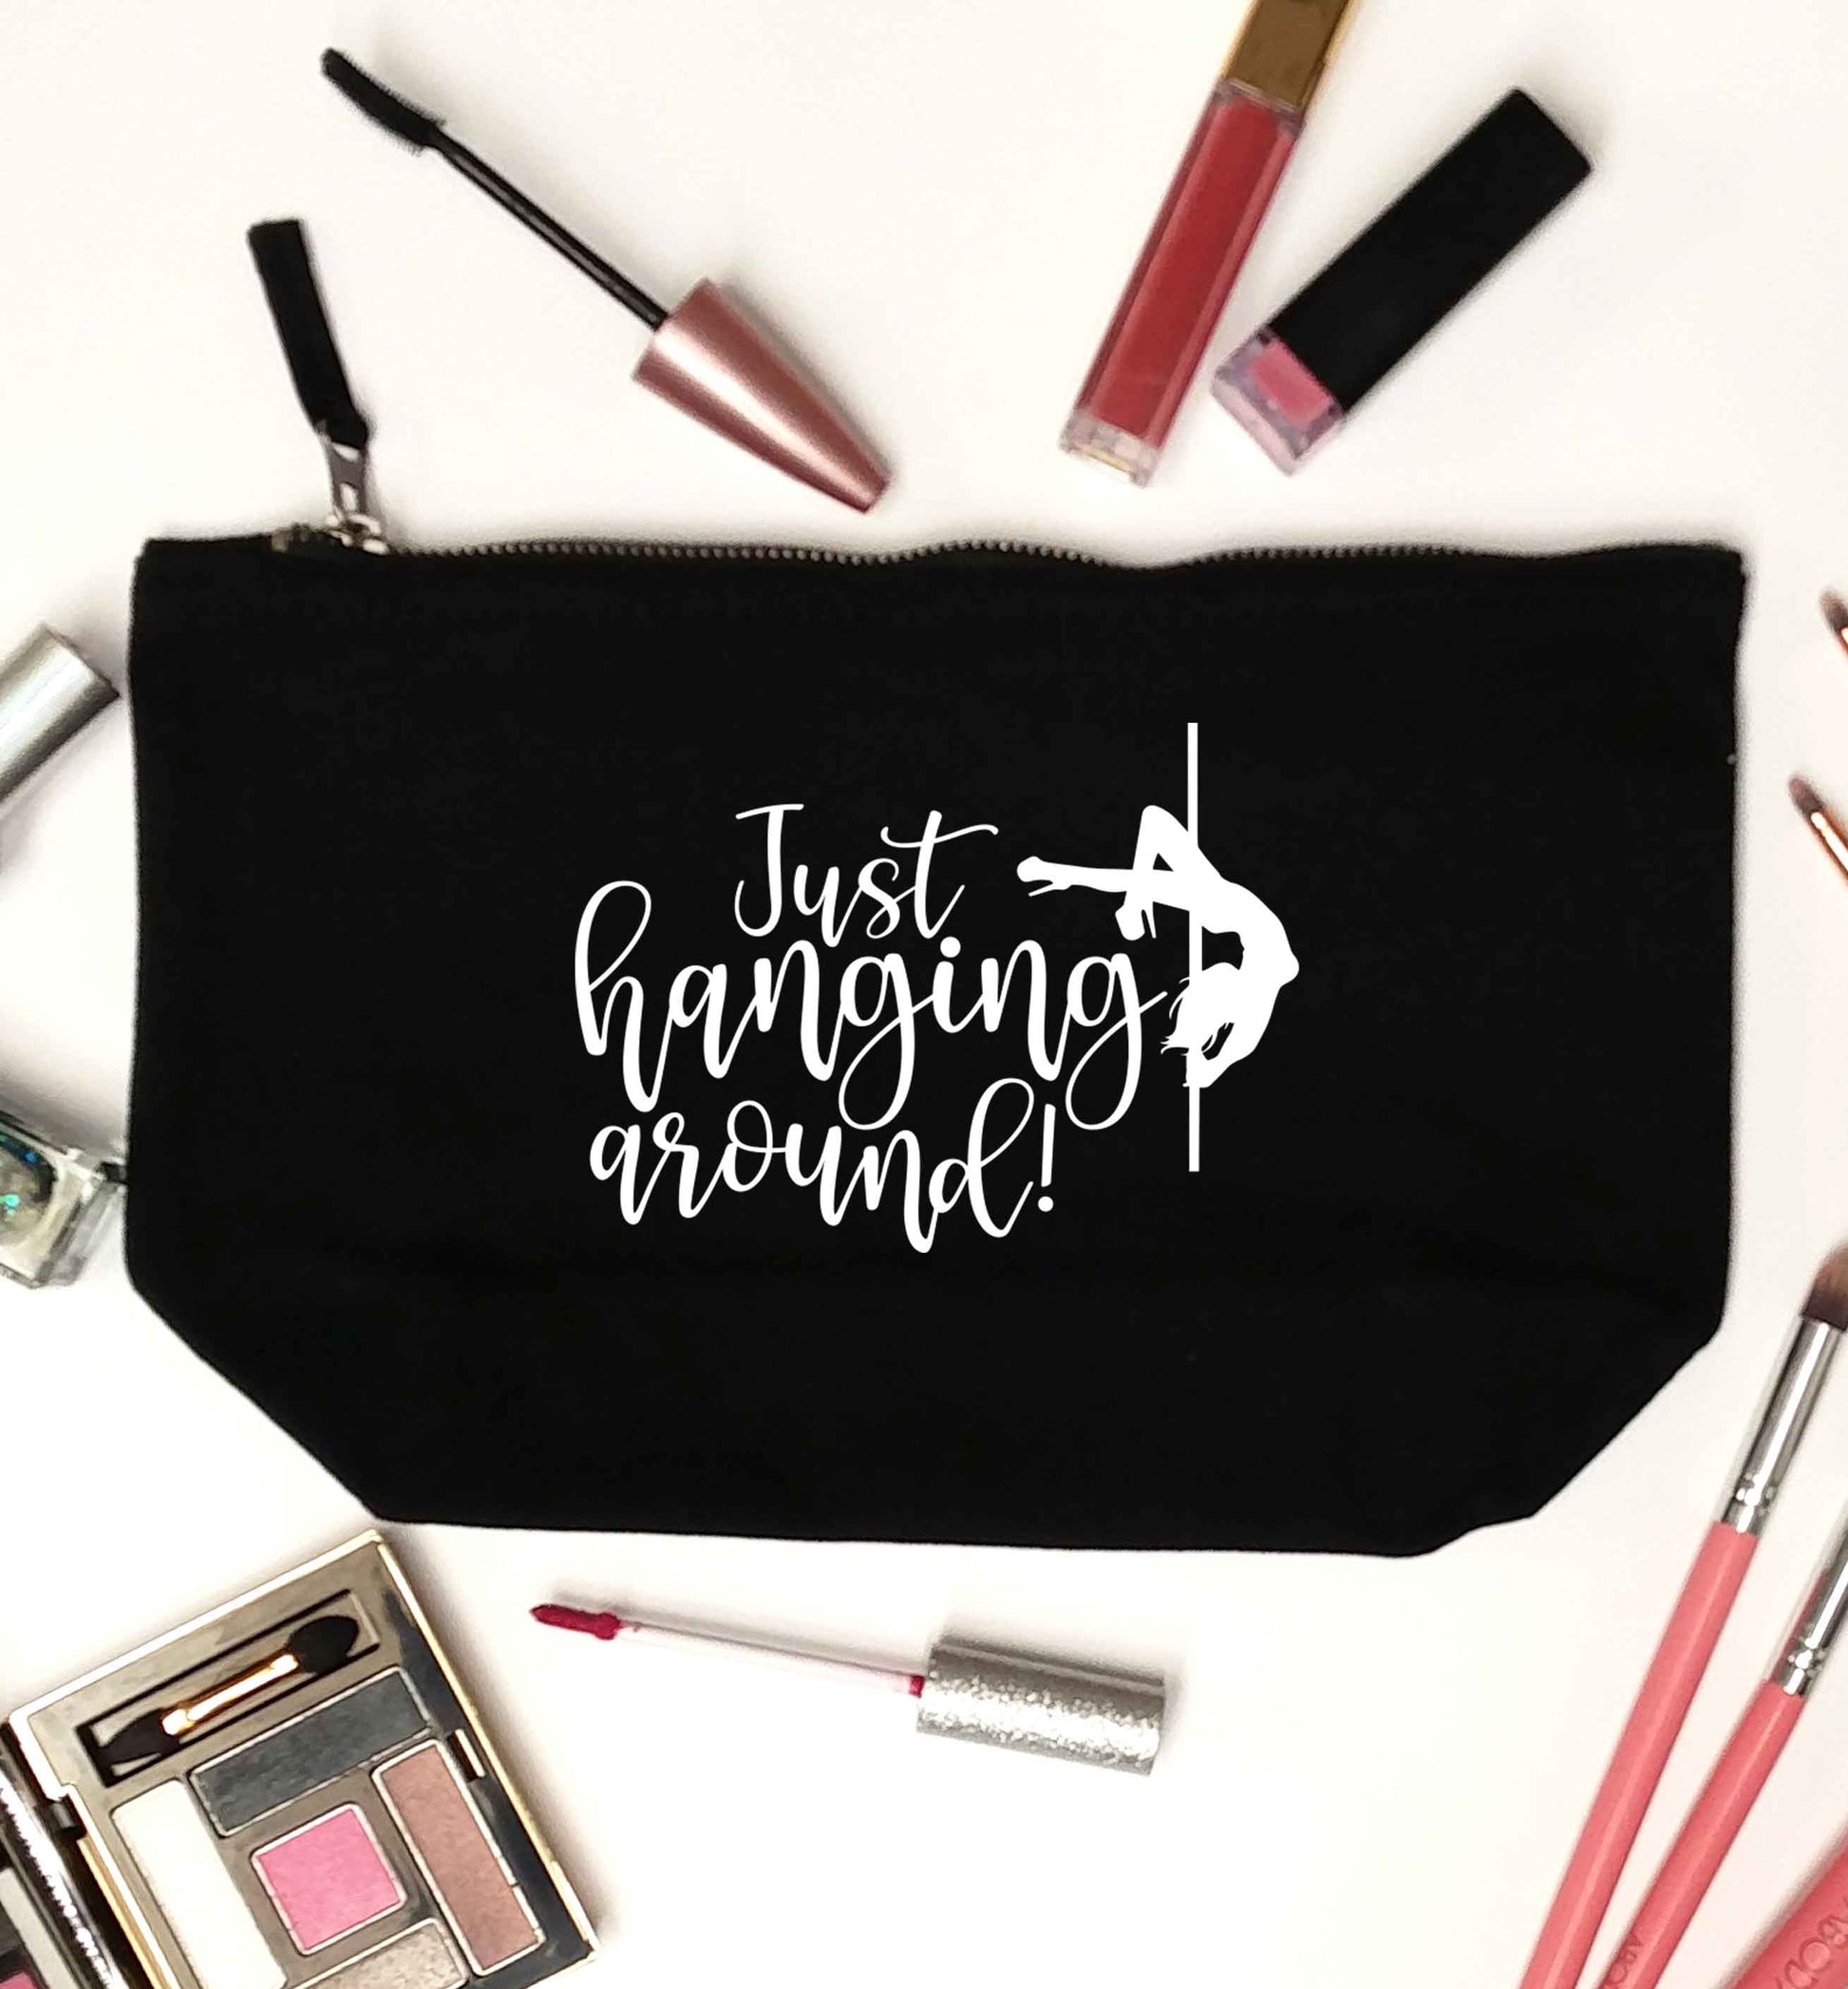 Best Things Happen Dancing black makeup bag